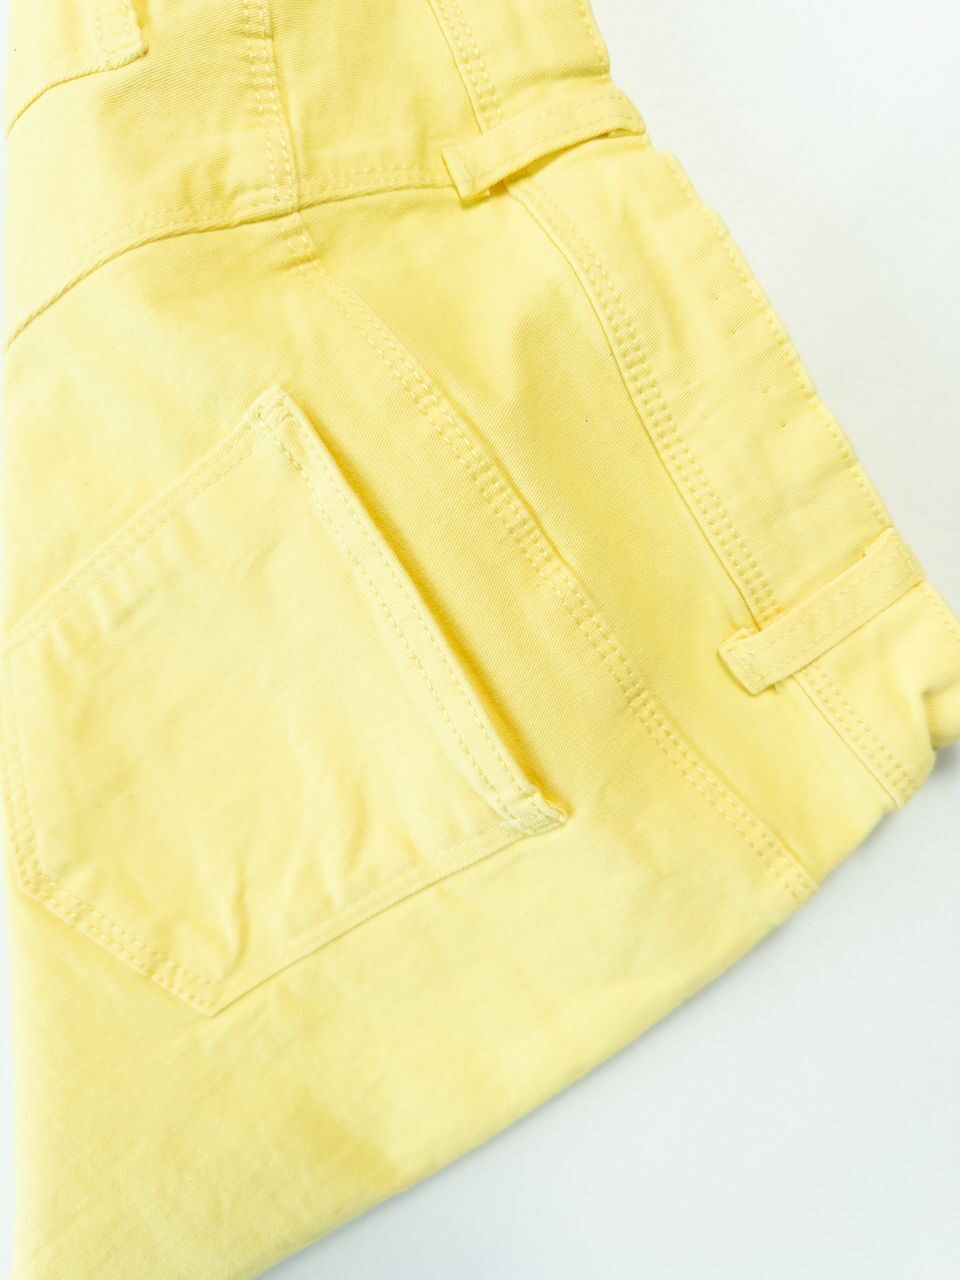 Шорты джинсовые для девочки с утягивающей резинкой в поясе цвет желтый на рост 146-152 см 12 лет KIABI